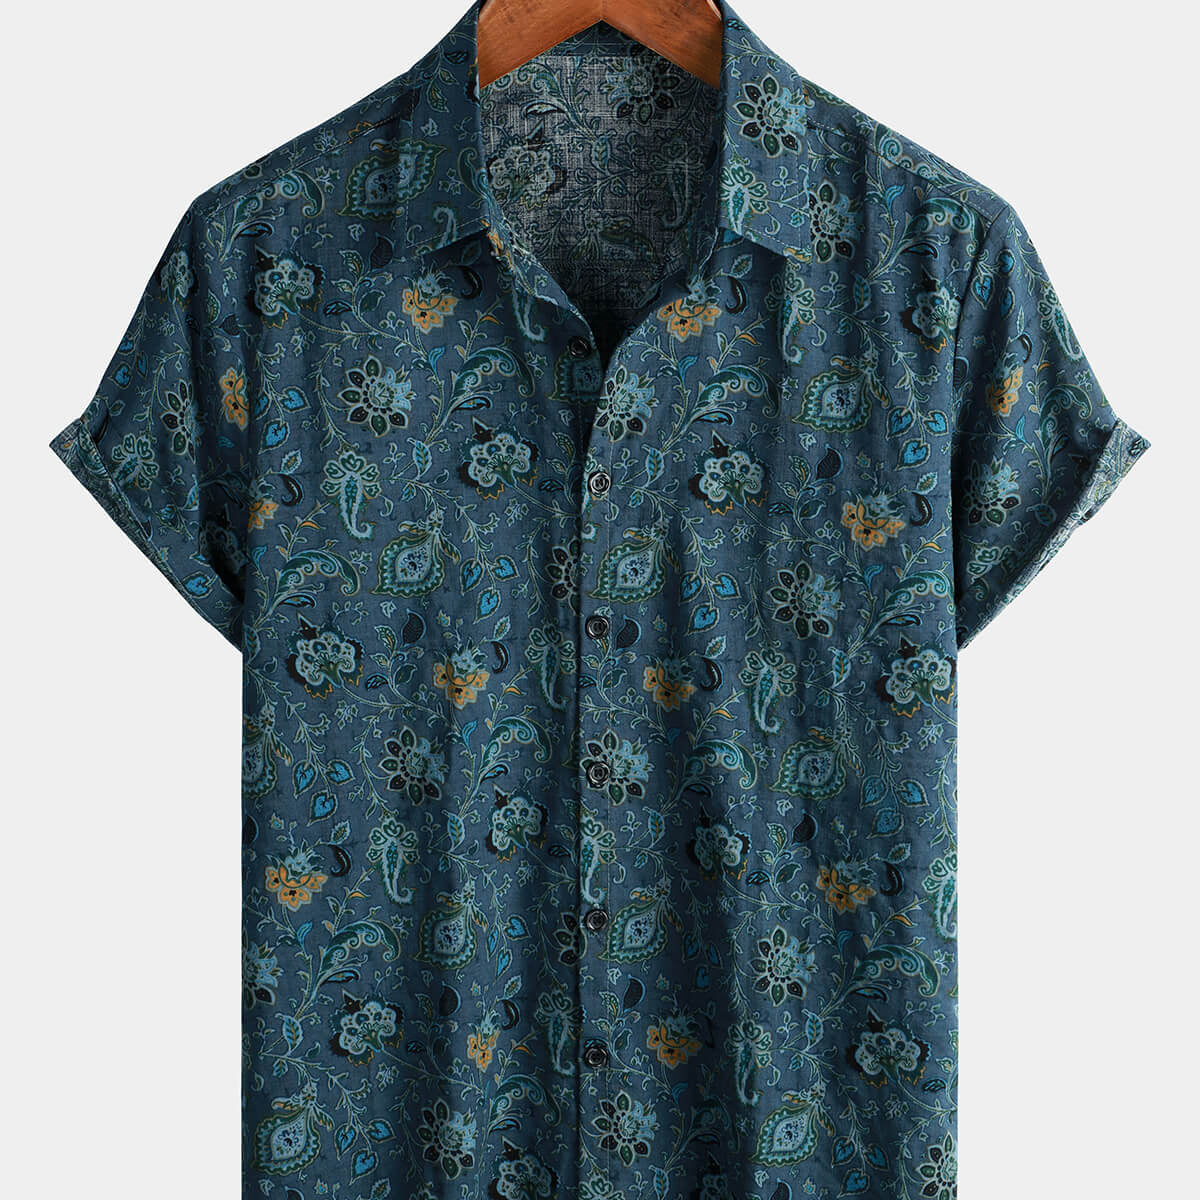 Camisa de manga corta para hombre, estilo paisley, vintage, floral, retro, con botones, azul, para vacaciones de verano